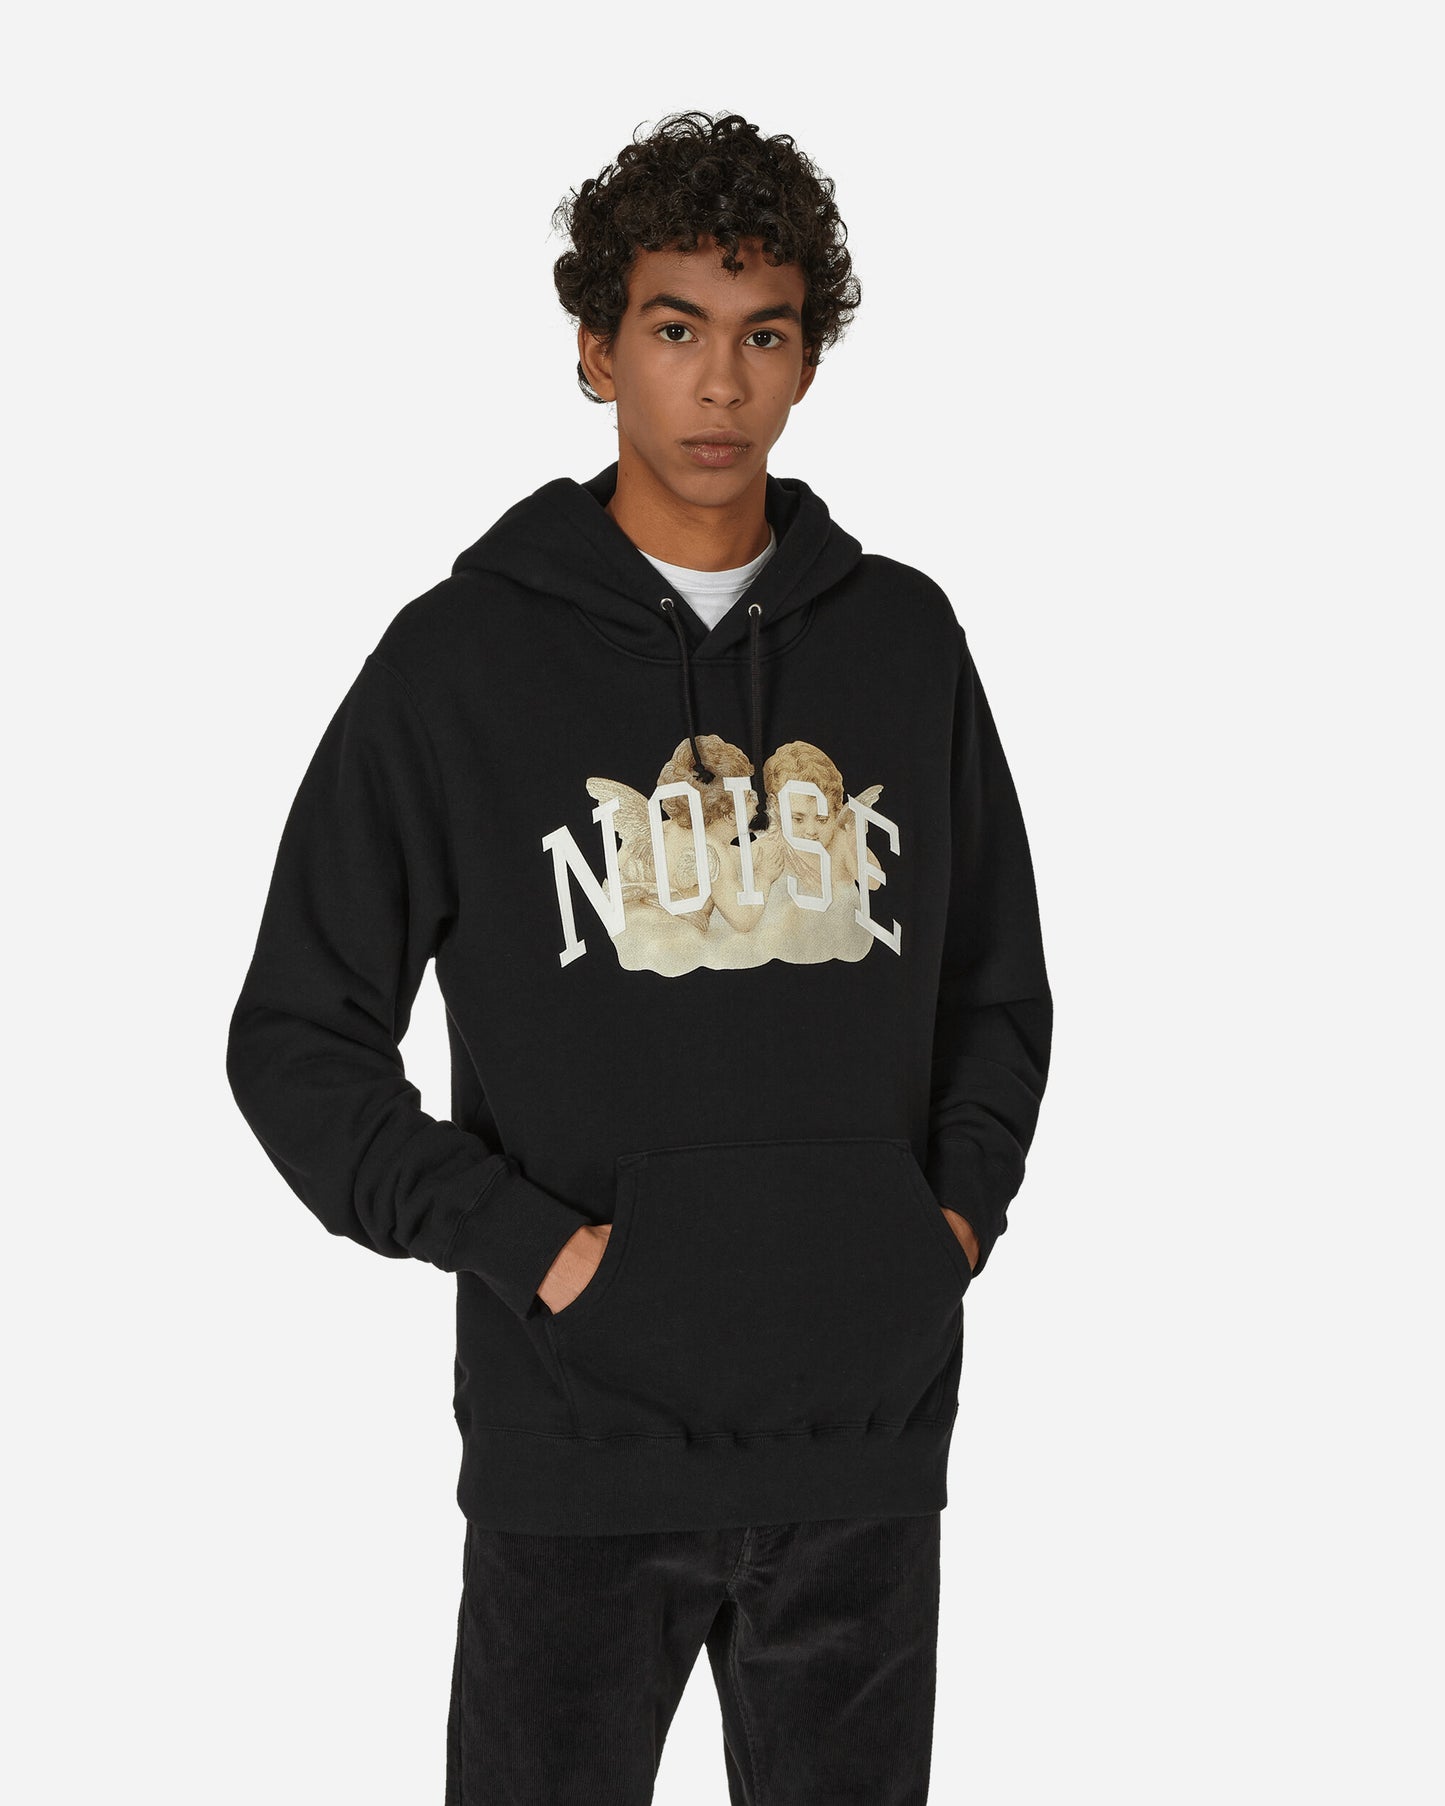 Undercover Noise Hooded Sweatshirt Black Sweatshirts Hoodies UC2C4892-3 1